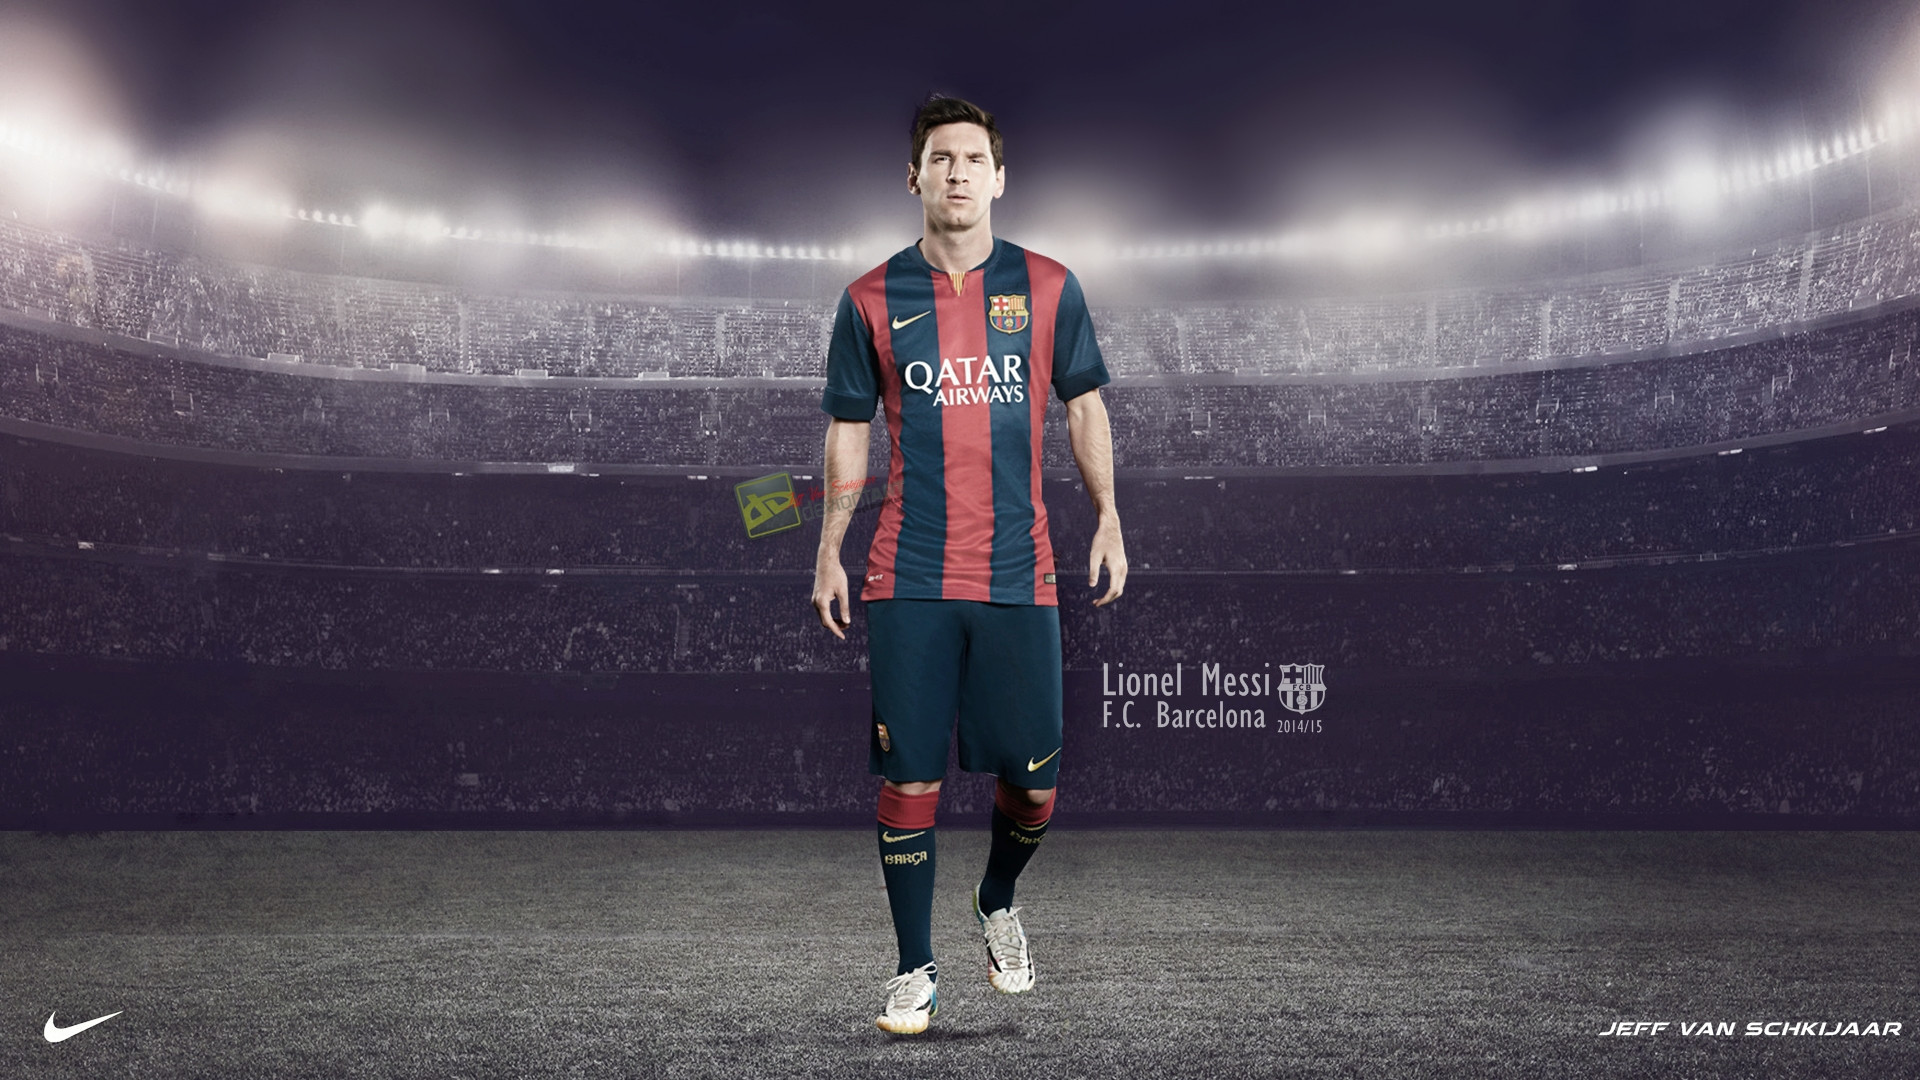 1920x1080 FIFA 15 Lionel Messi Cover Games Wallpaper HD #4833 Wallpaper .